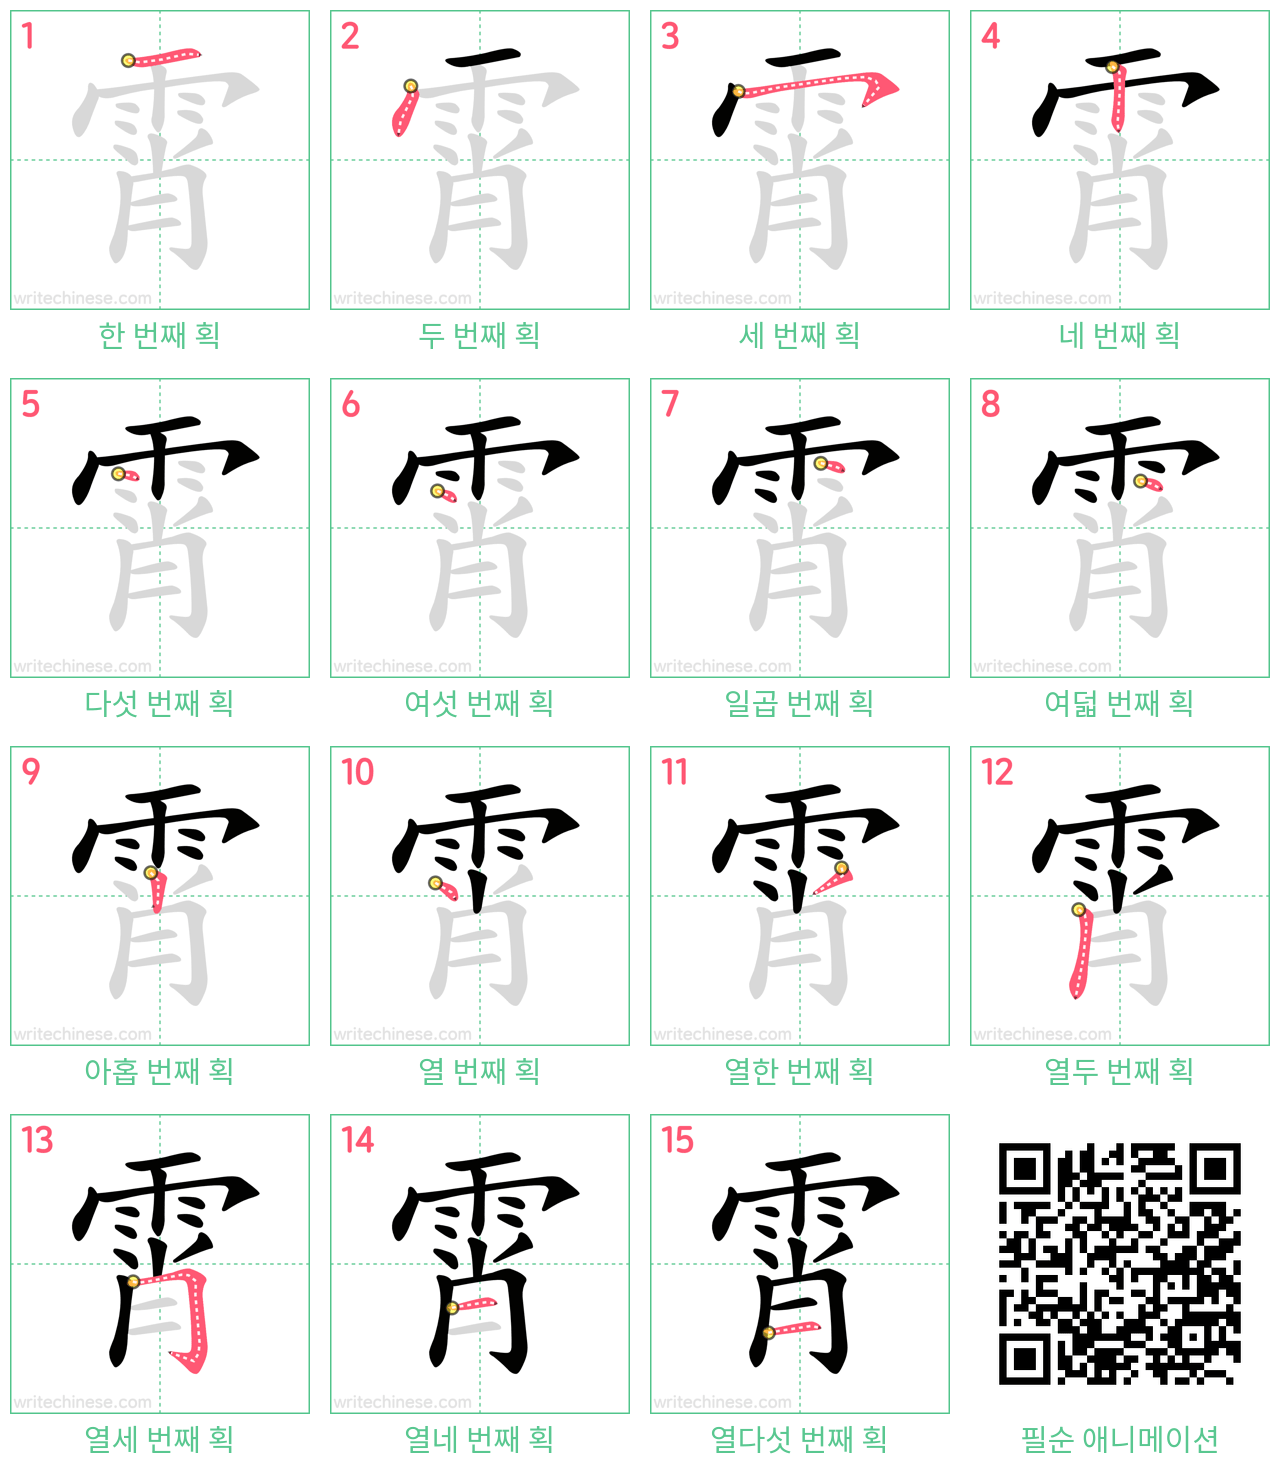 霄 step-by-step stroke order diagrams